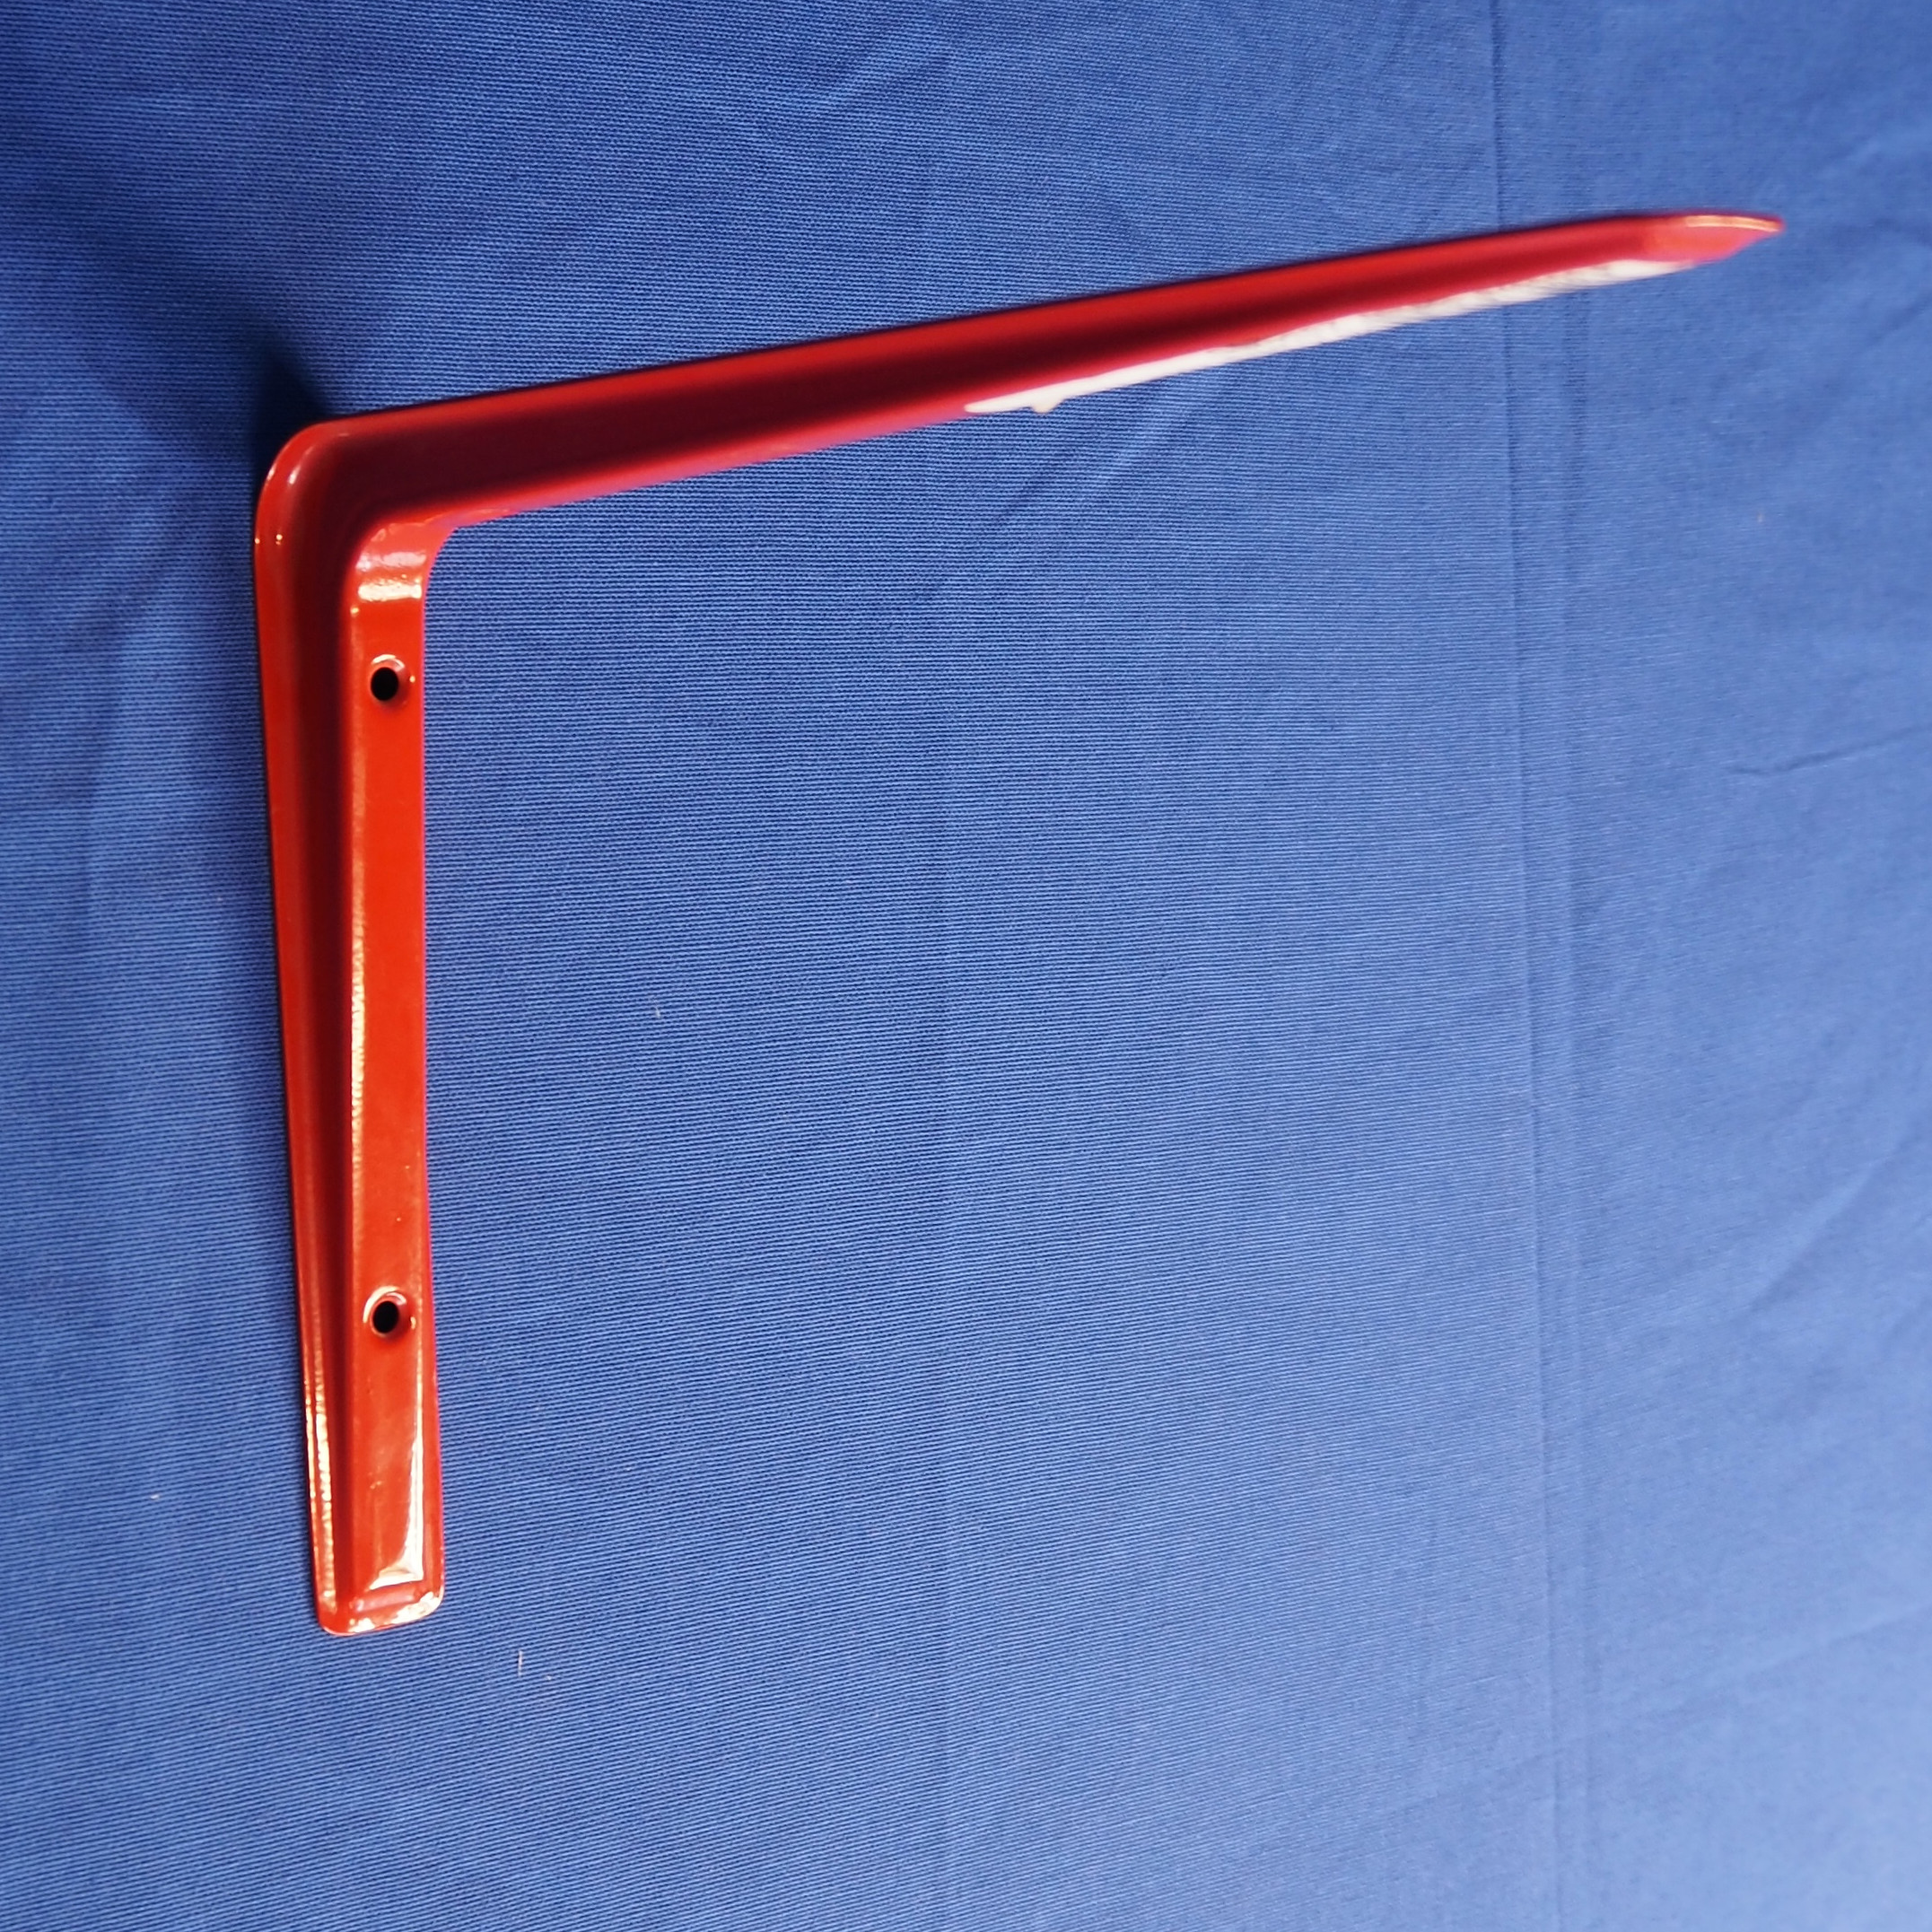 Shelf bracket (27 cm x 19 cm)